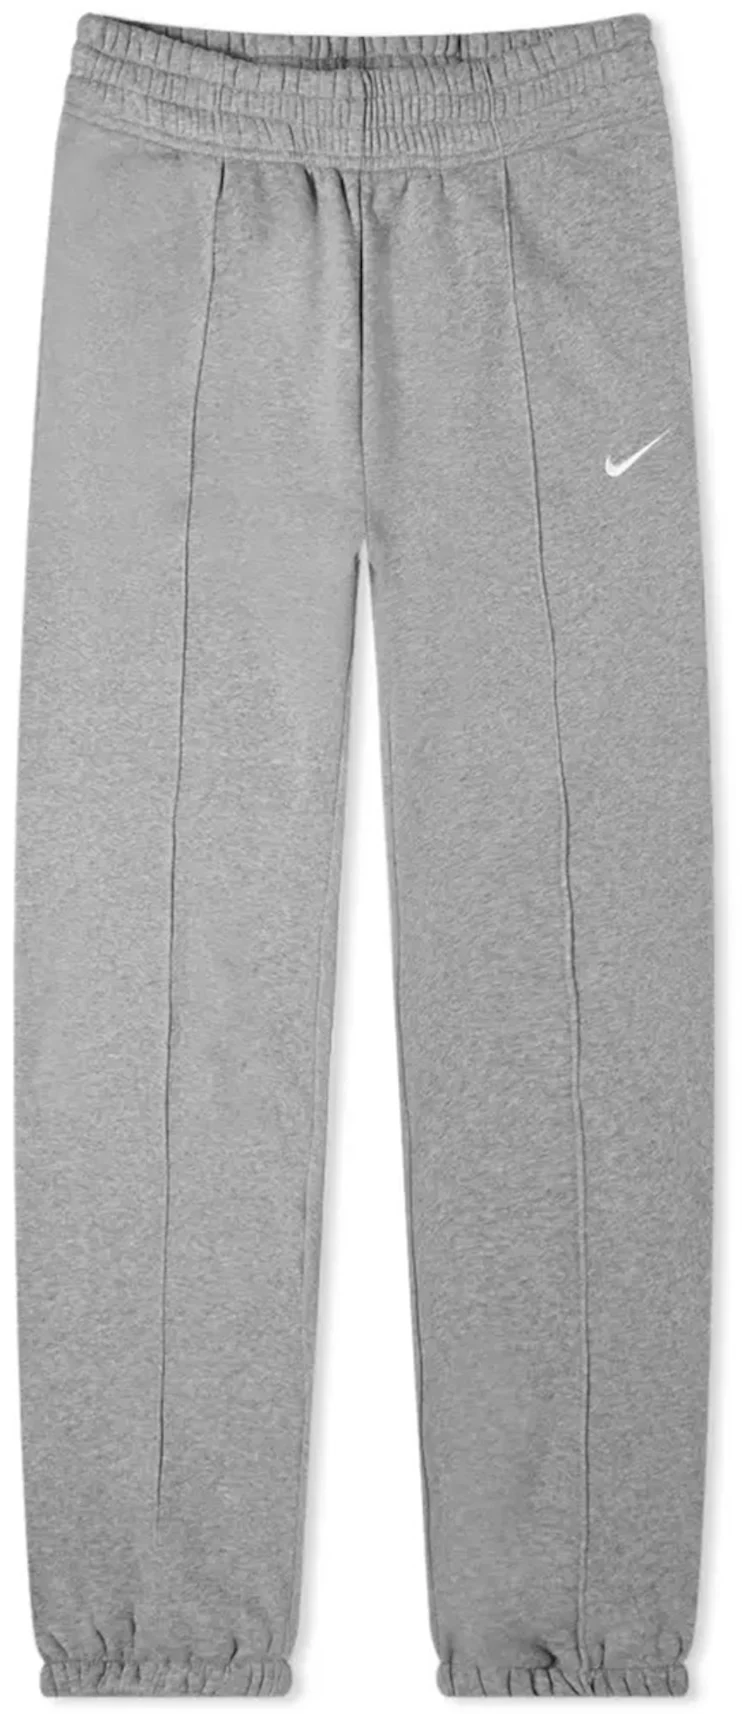 Nike Women's Sportswear Collection Essential Fleece Trousers Dark